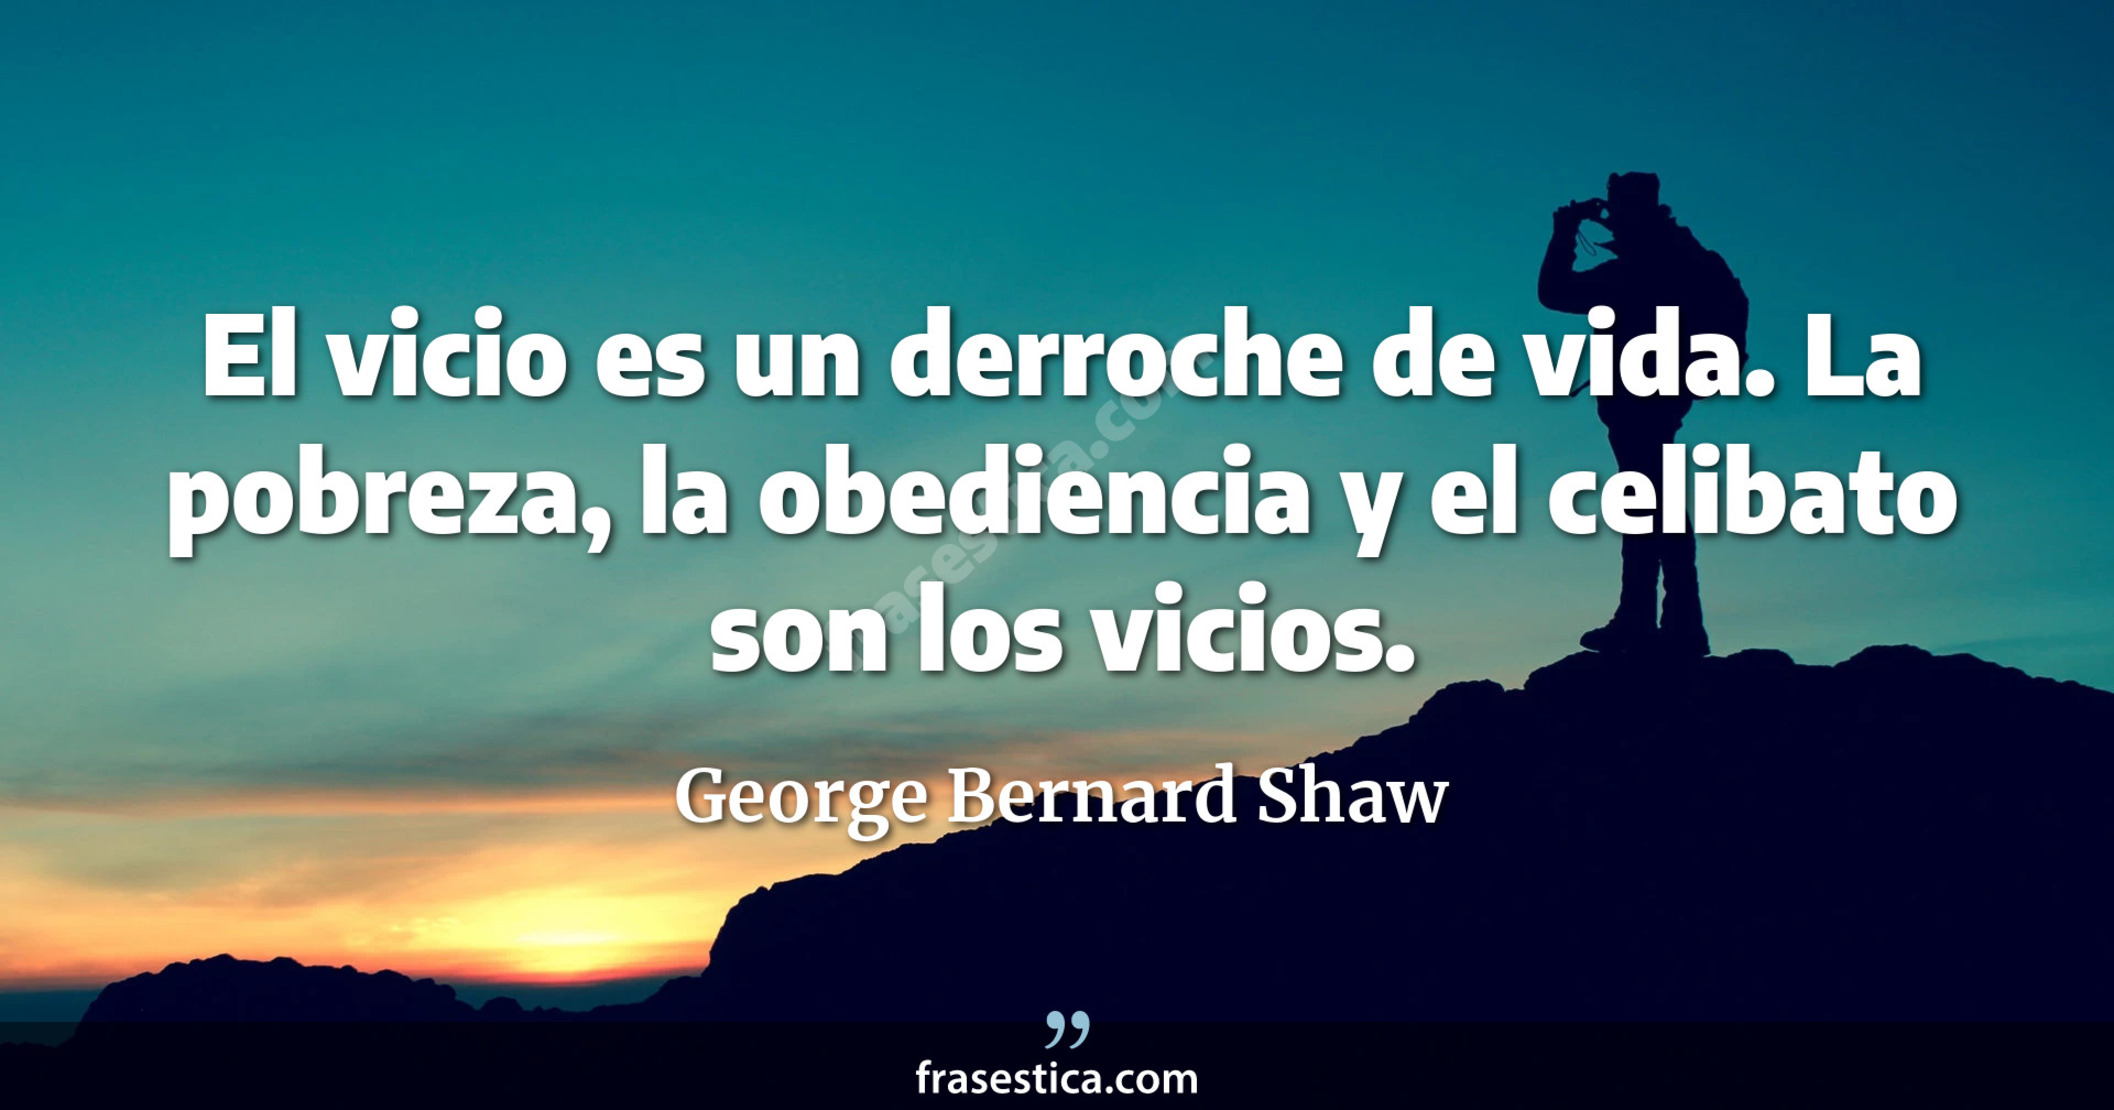 El vicio es un derroche de vida. La pobreza, la obediencia y el celibato son los vicios. - George Bernard Shaw